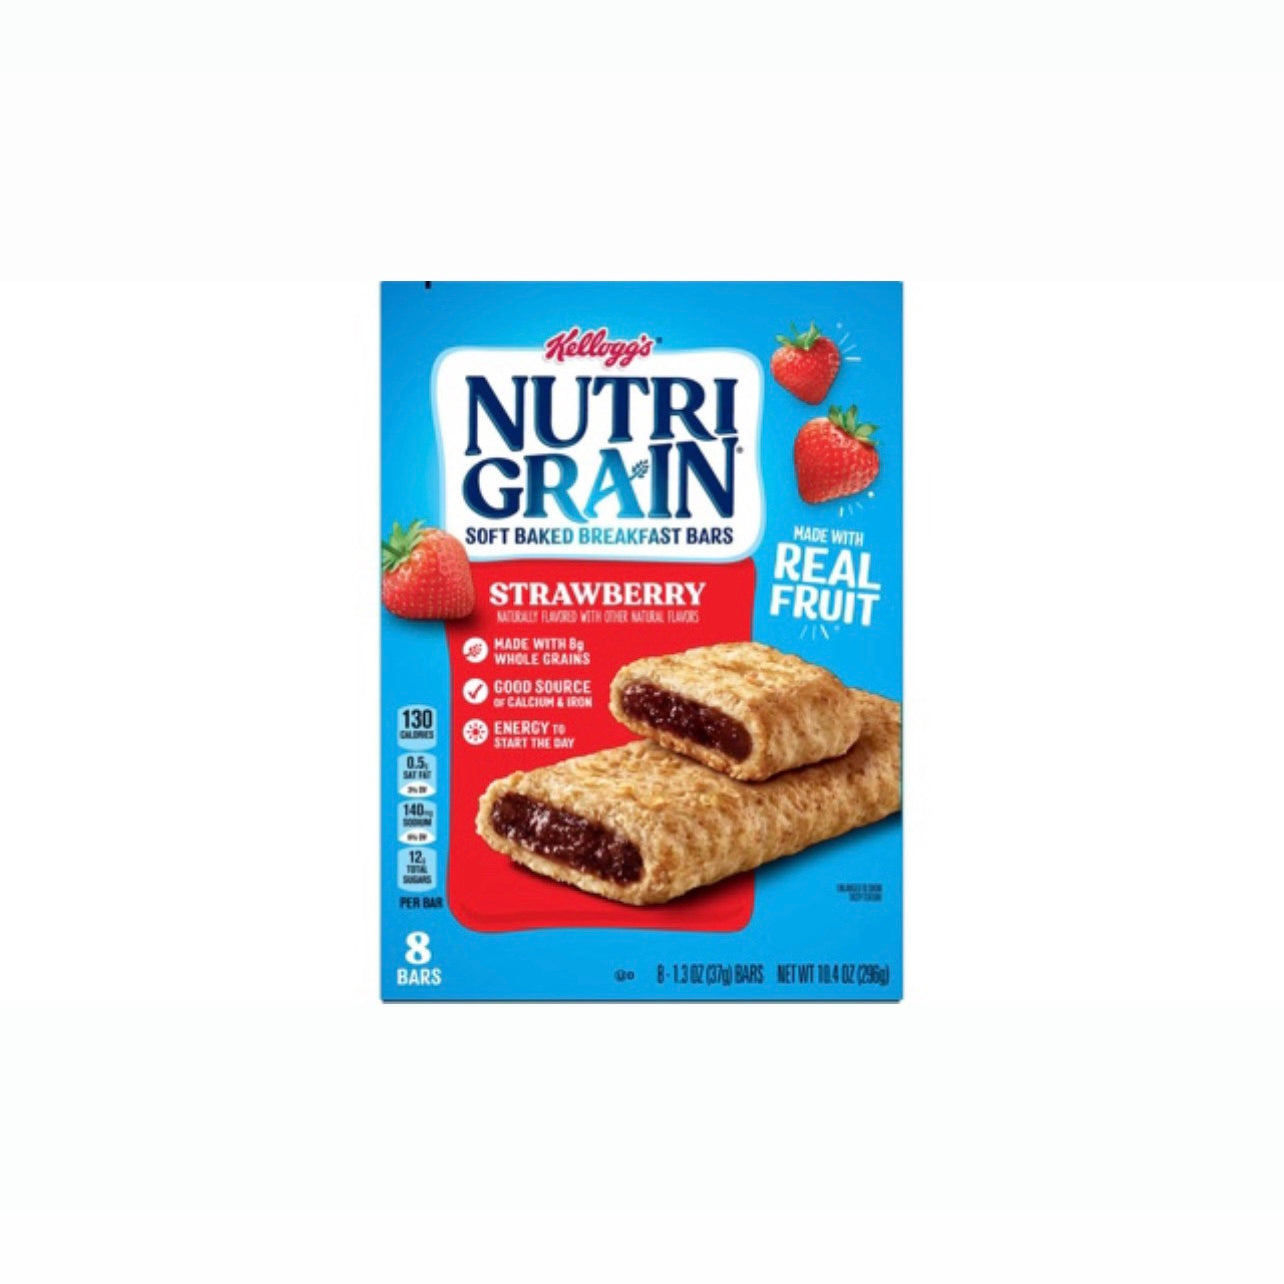 NutriGrain Strawberry Soft Baked Breakfast Bars Box (038000110290)